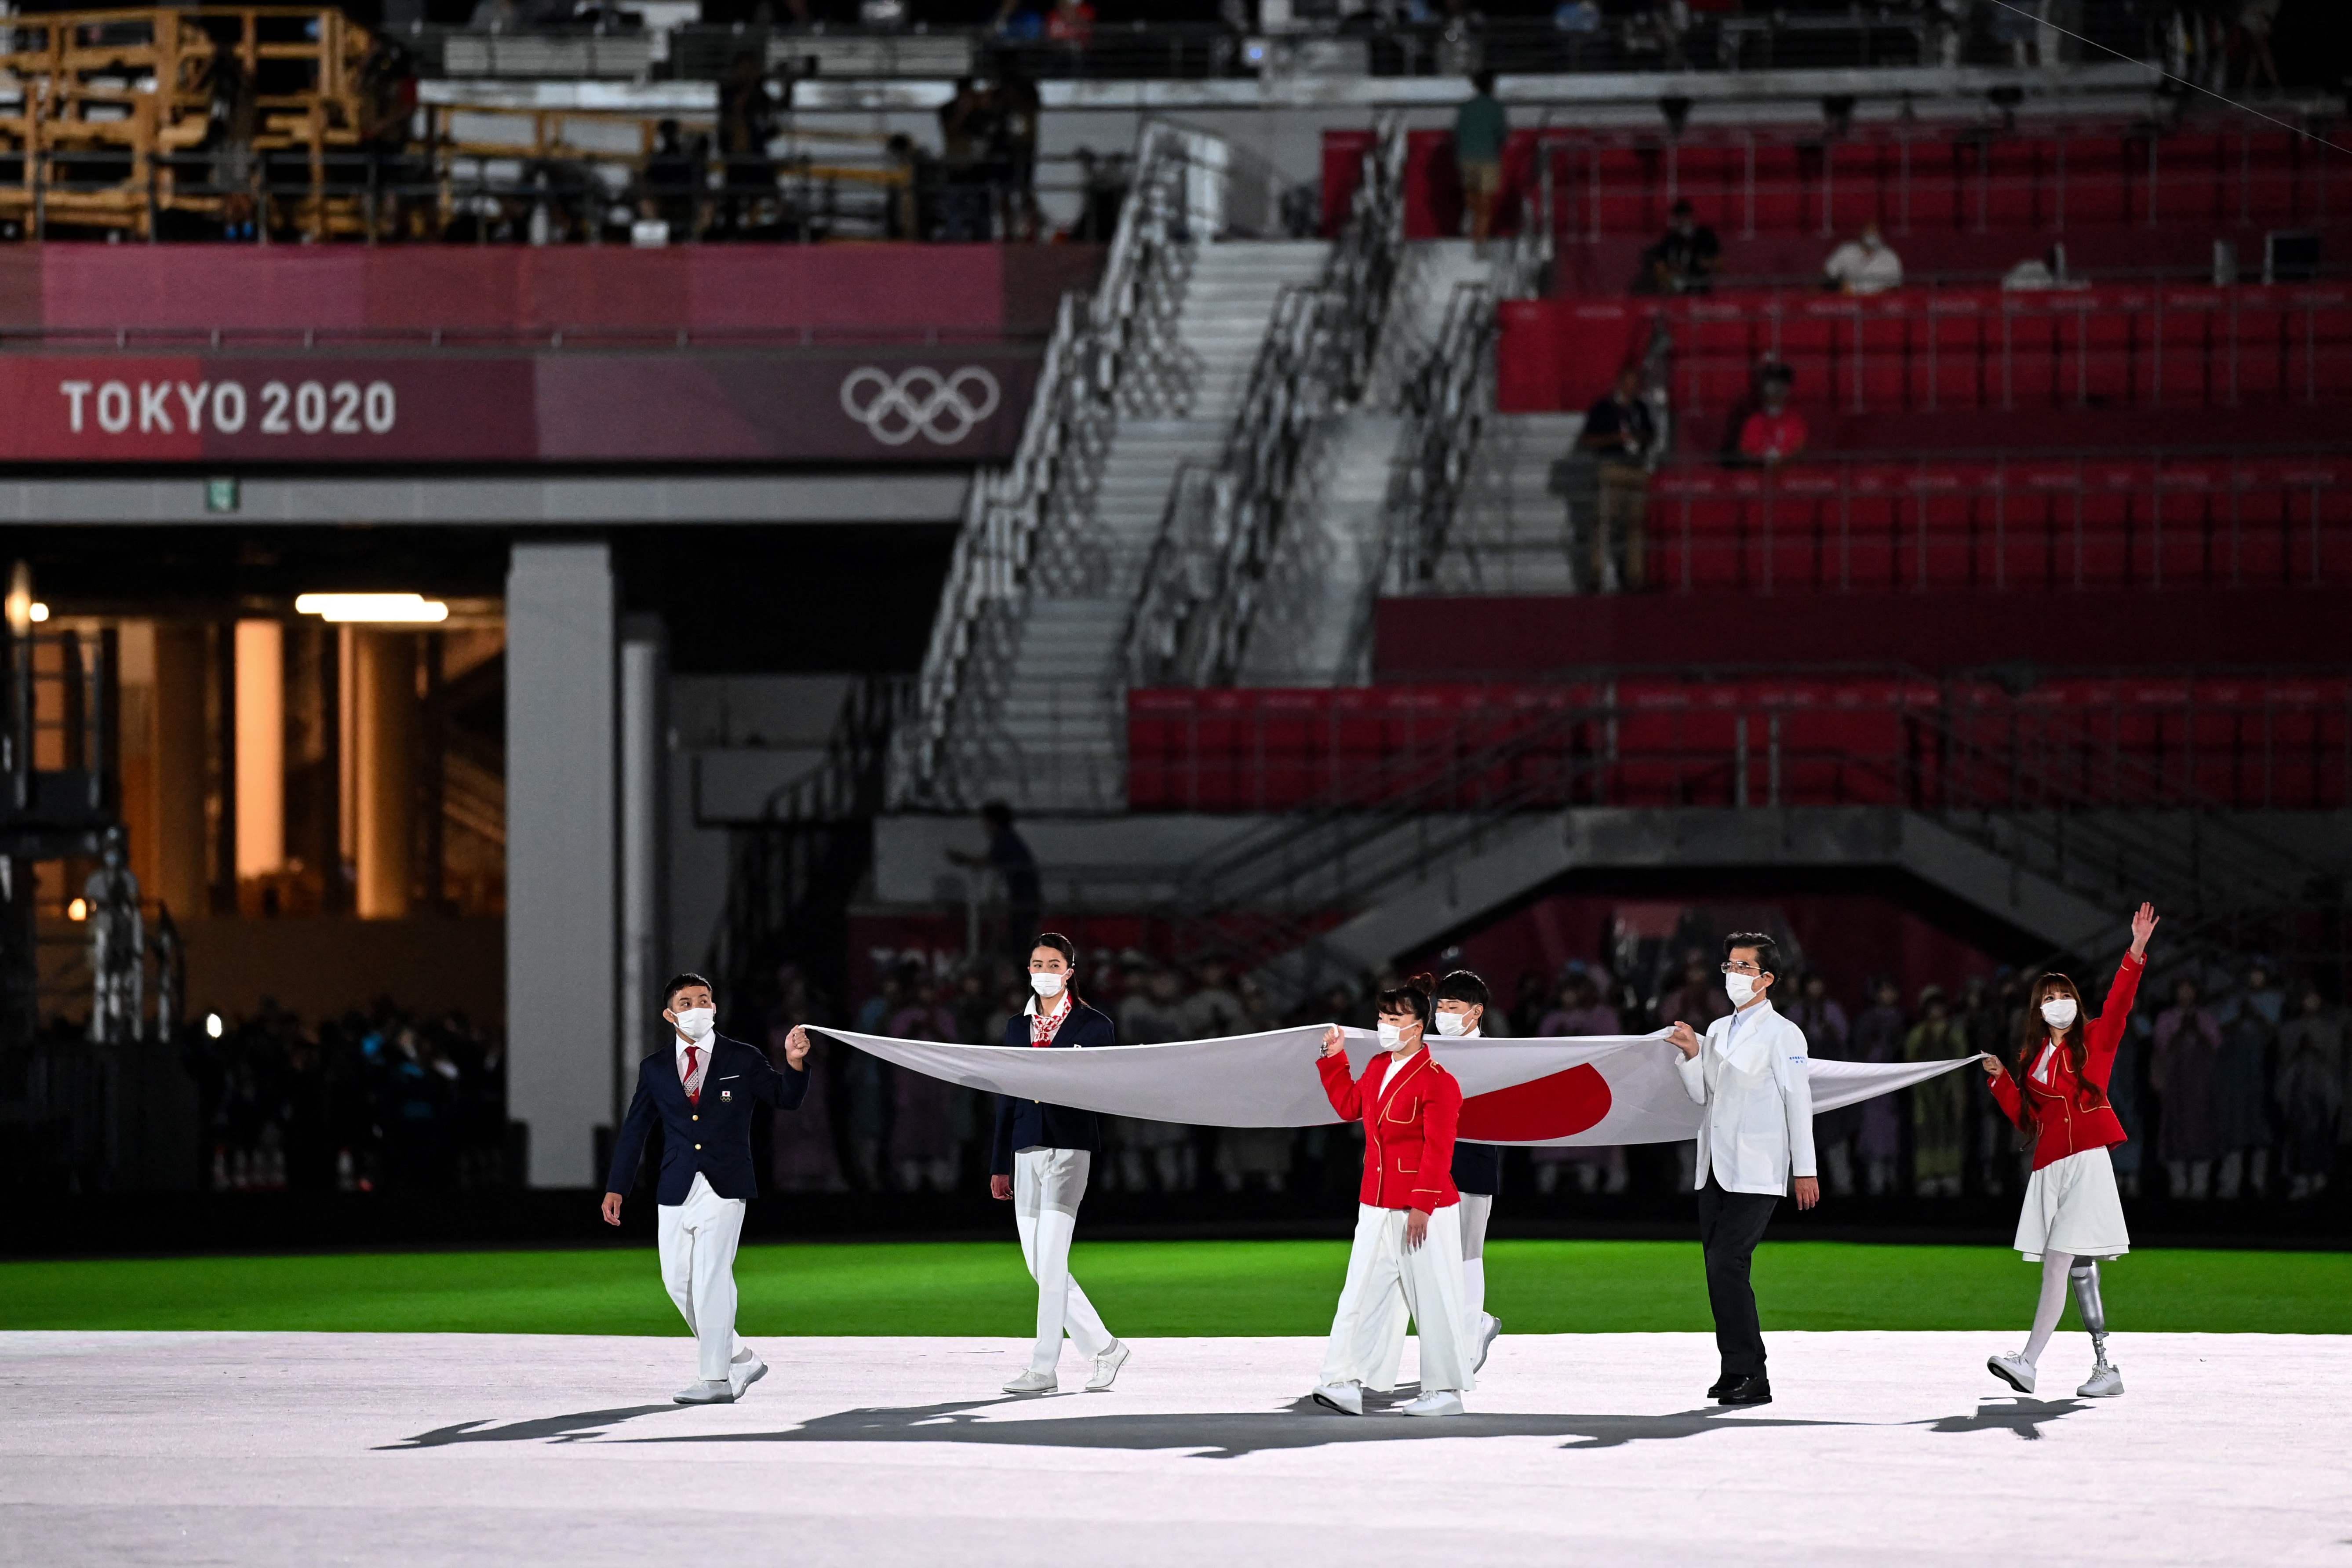 东京奥运闭幕式与开幕式一样，禁止观众入场，图为闭幕式开始时奥运会旗与日本国旗（图）进场。（法新社照片）

